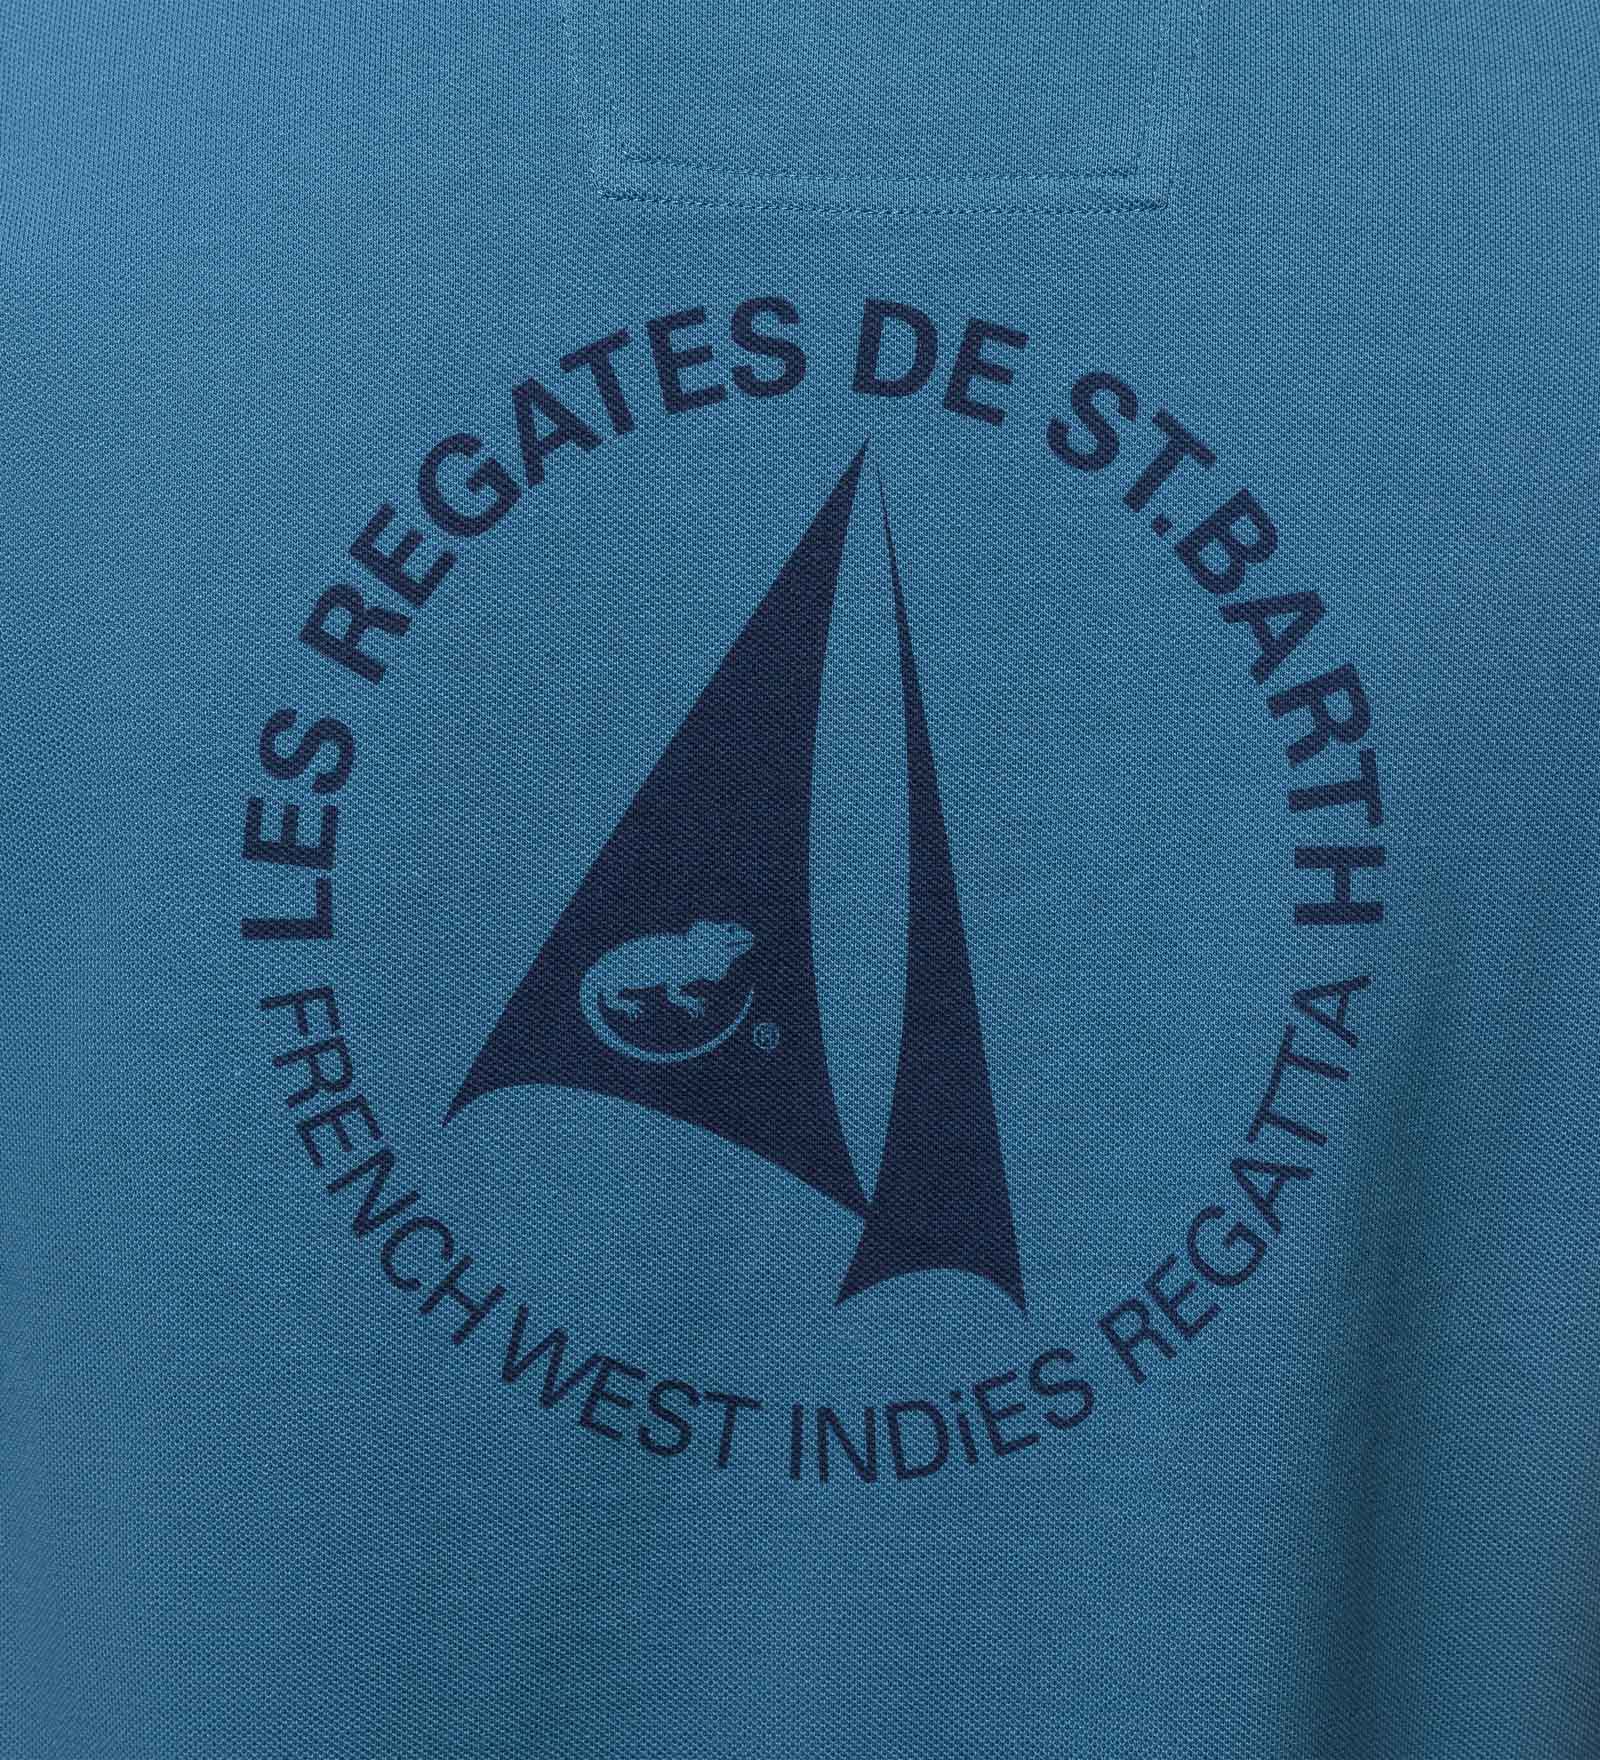 St. Barth Polo Shirt blue